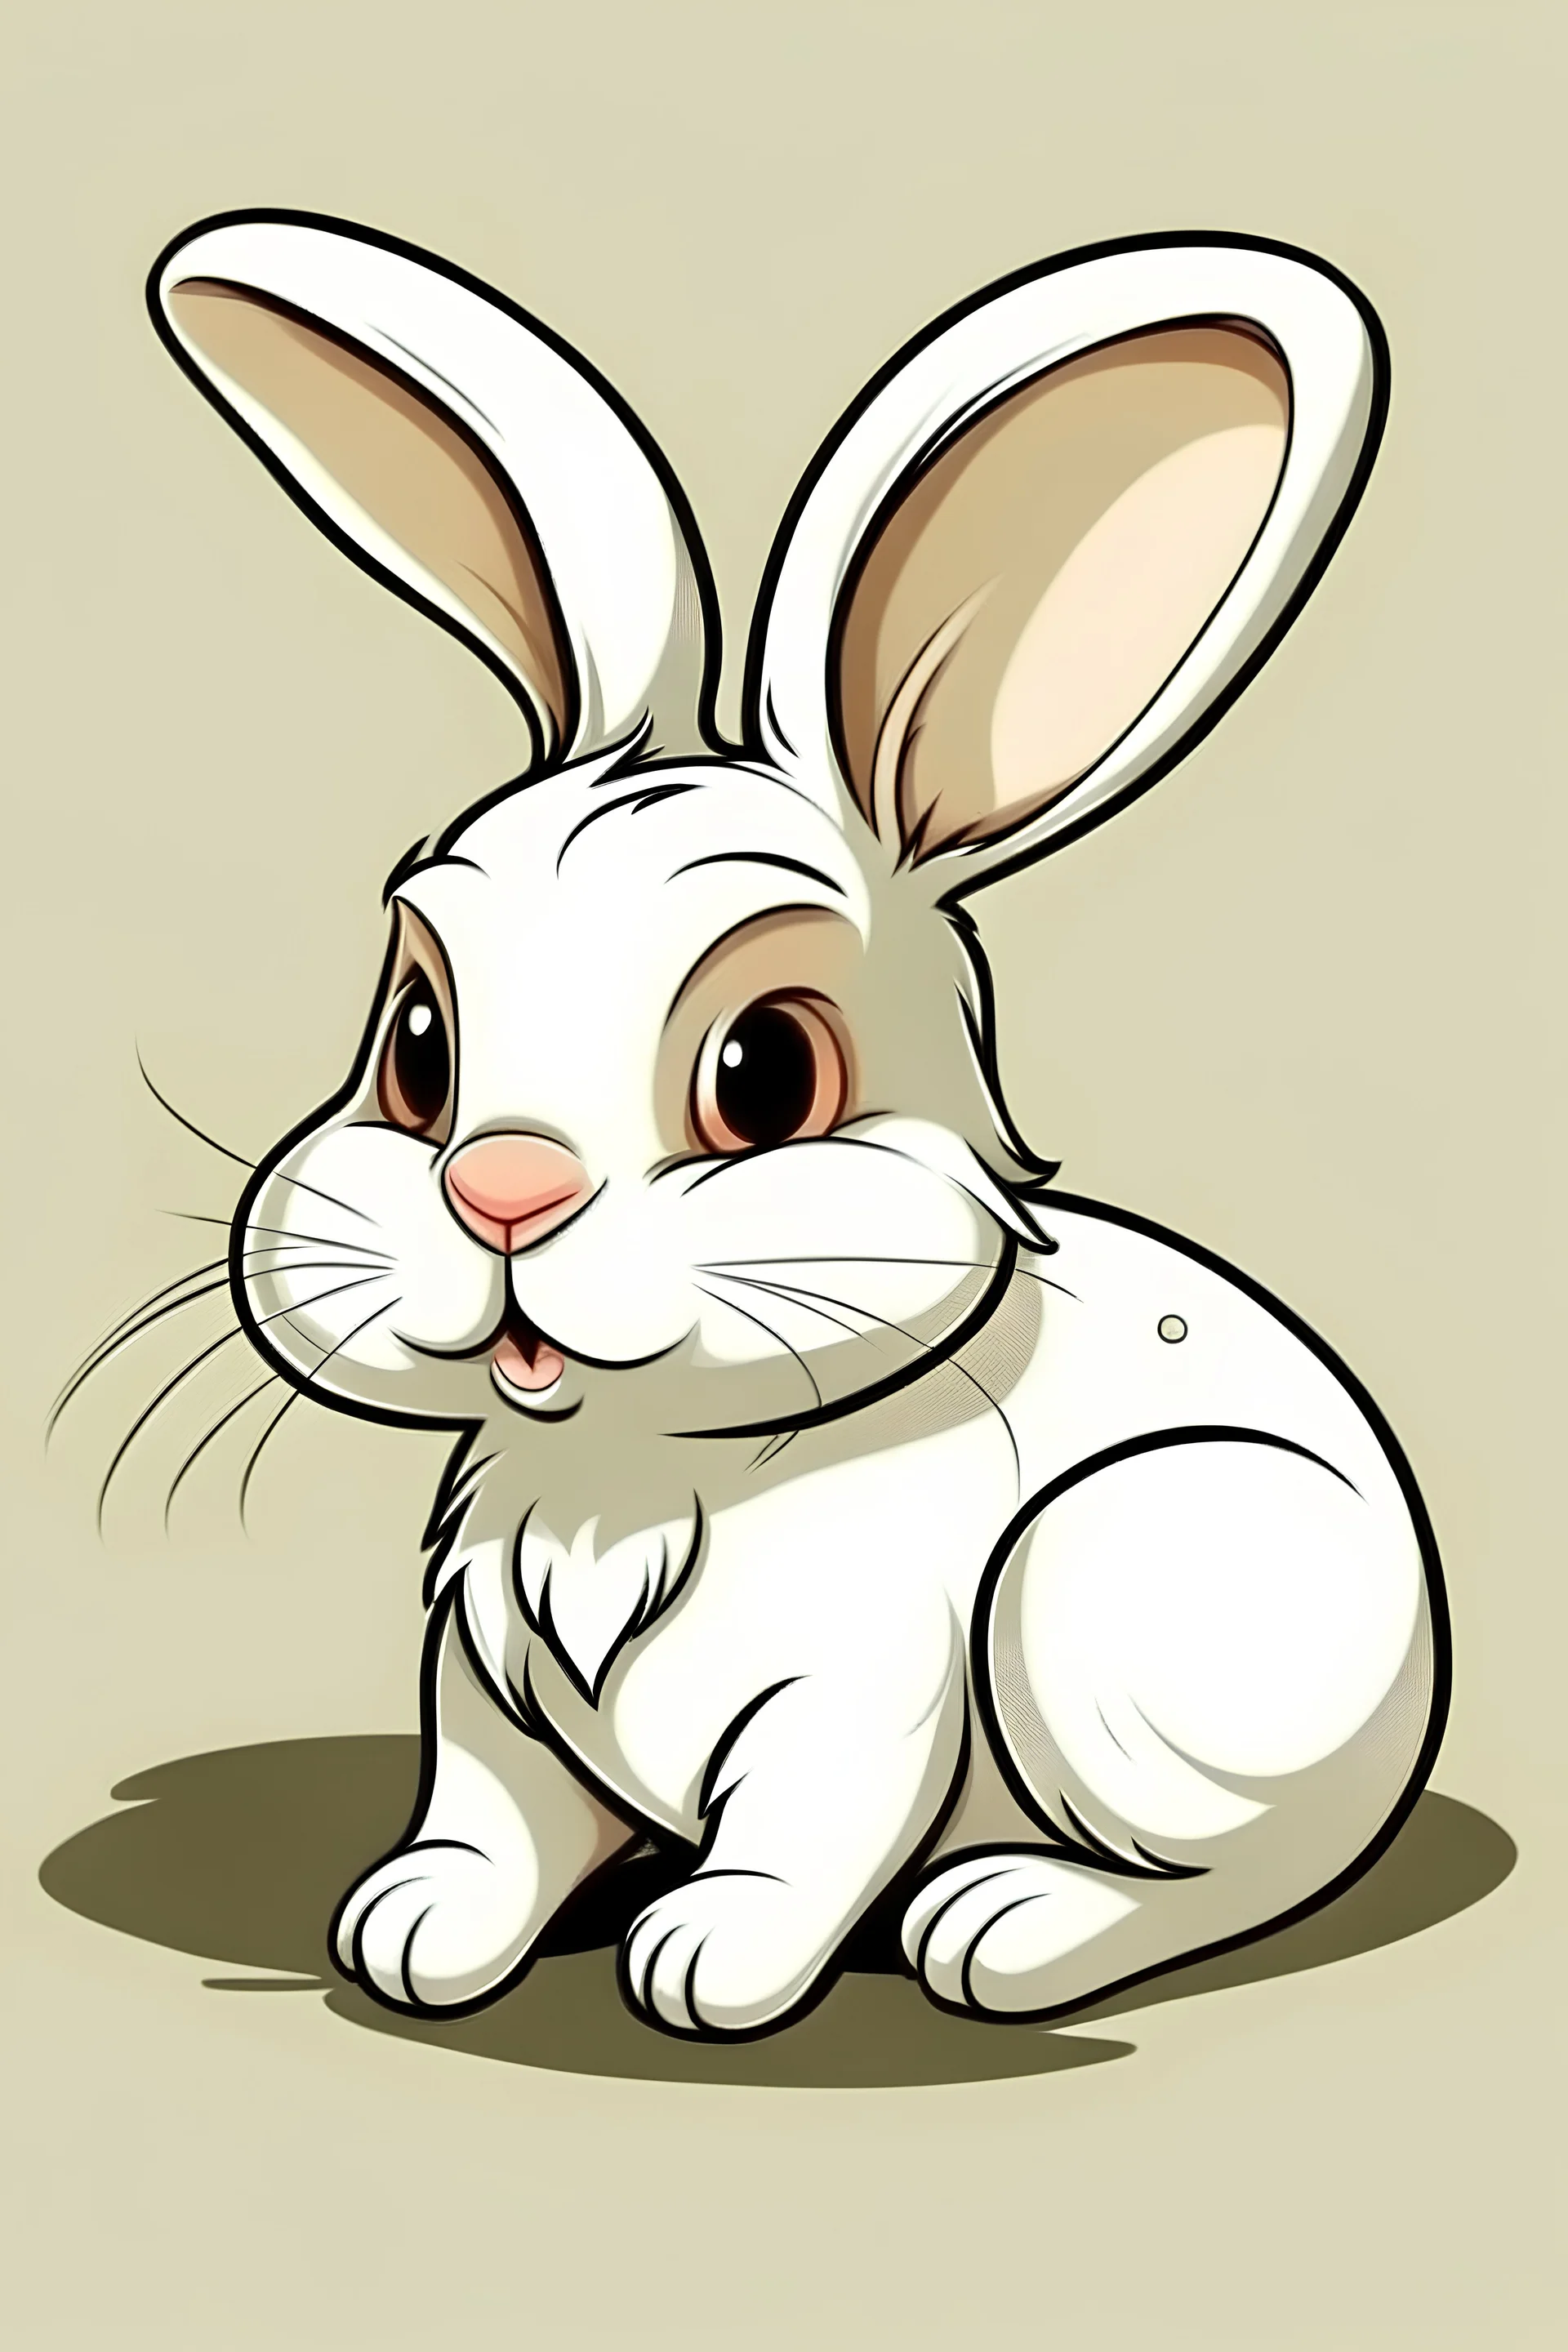 Rabbit, cartoon style